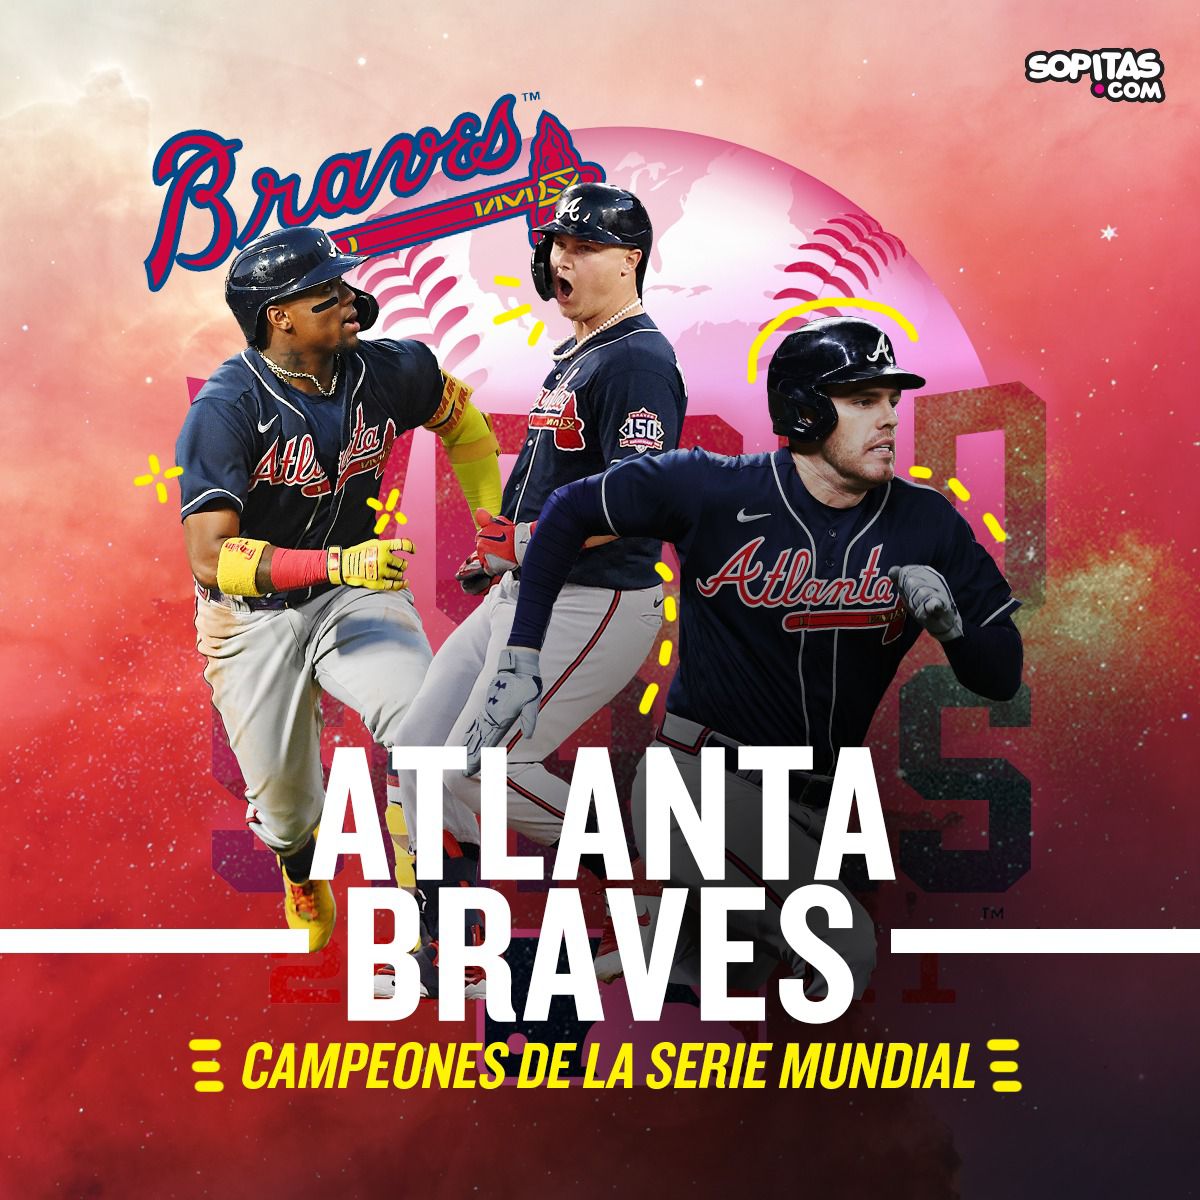 ¡Atlanta Braves es campeón de la Serie Mundial! Revive los mejores momentos del Juego 6